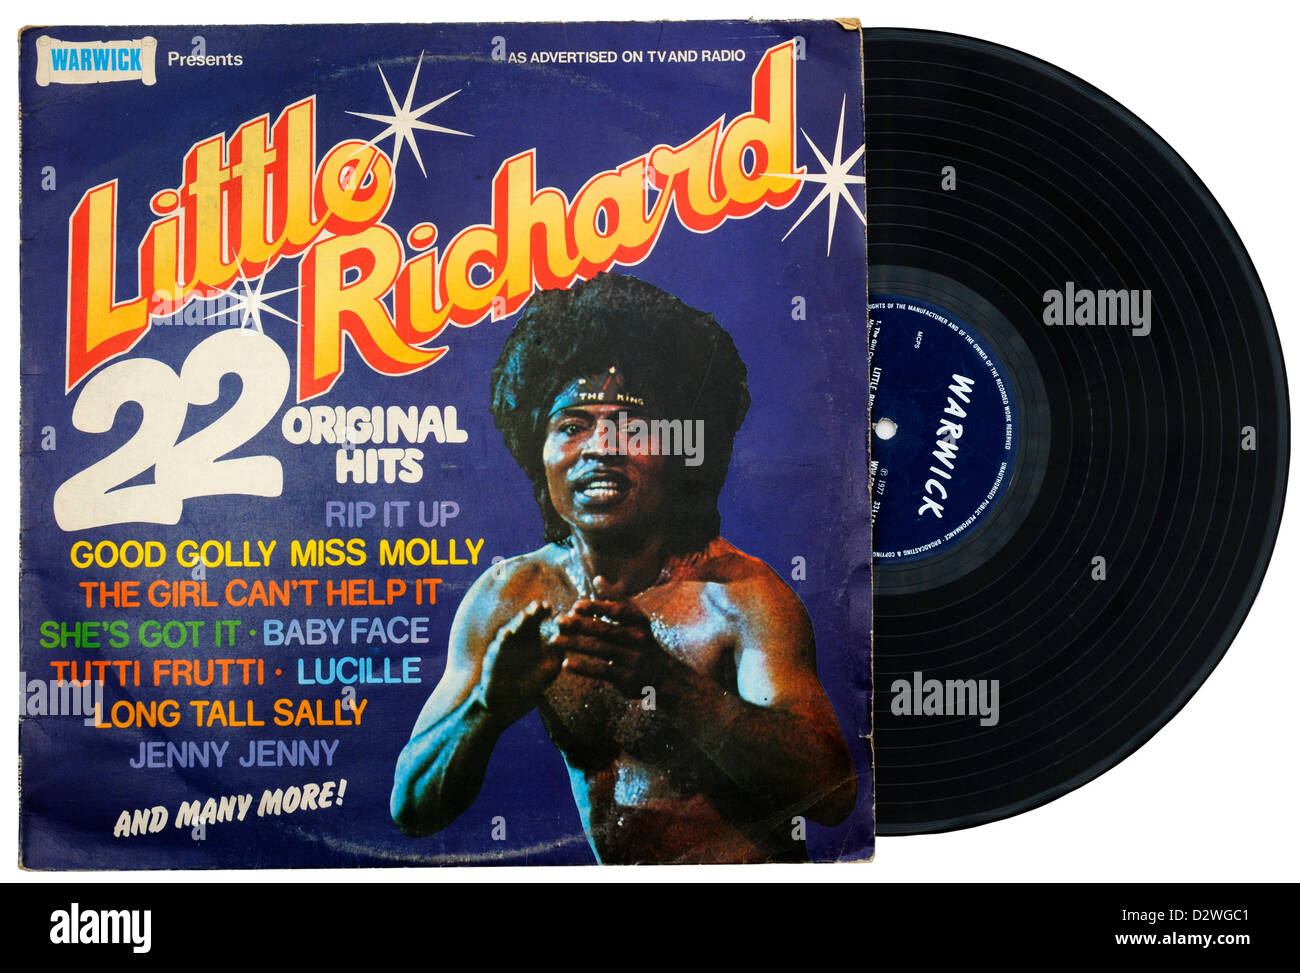 Little Richard Greatest Hits LP Stock Photo